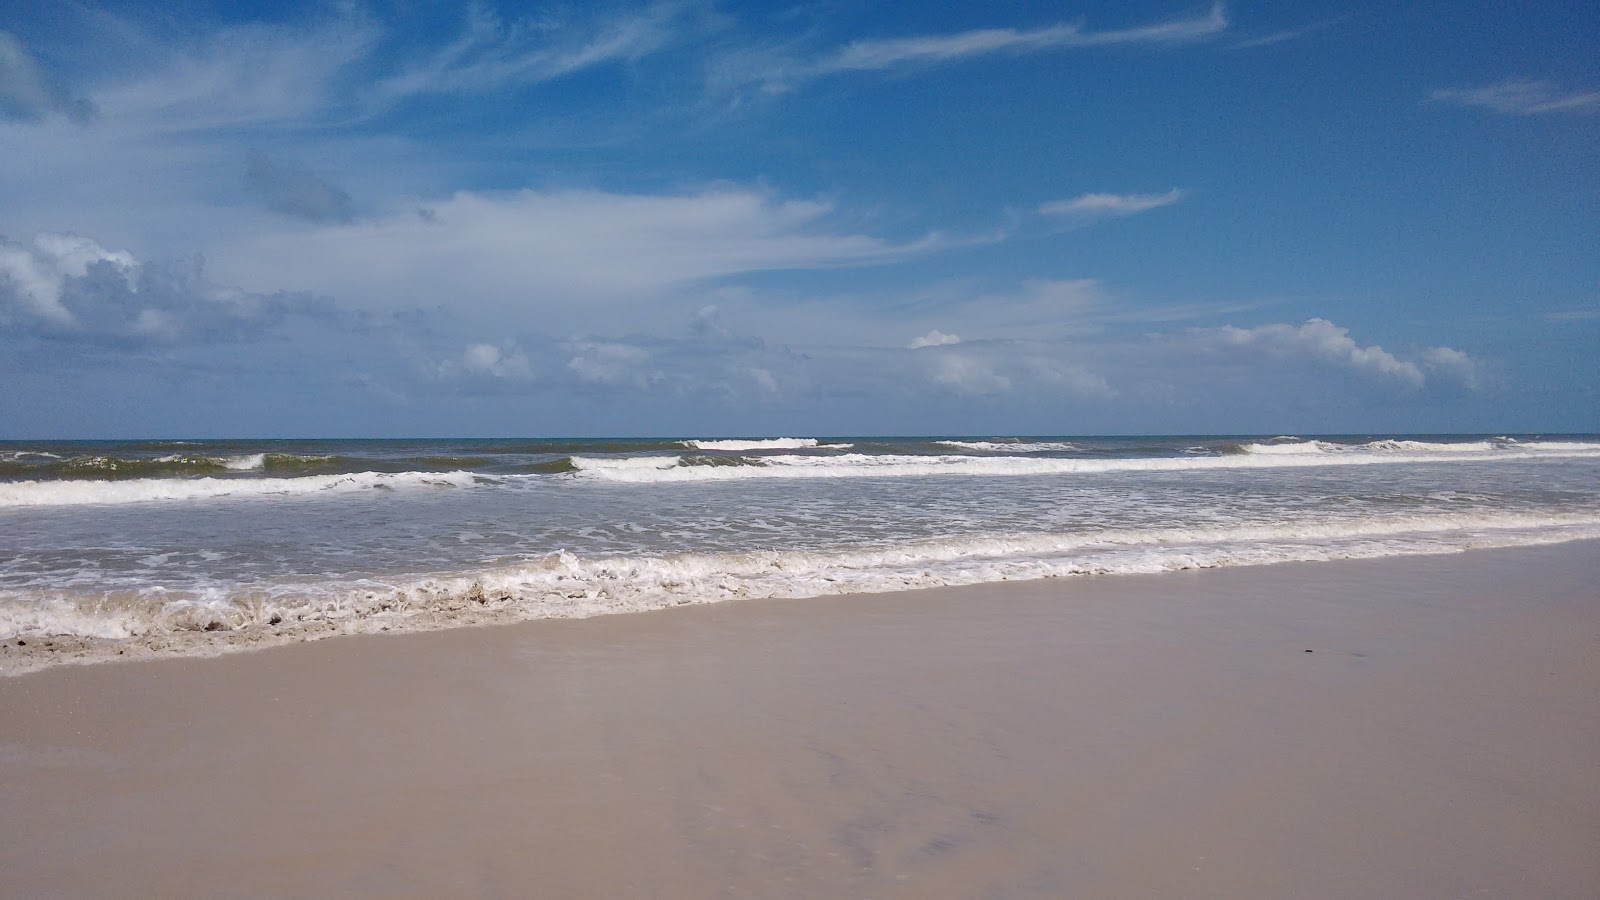 Fotografija Praia de Acuipe nahaja se v naravnem okolju